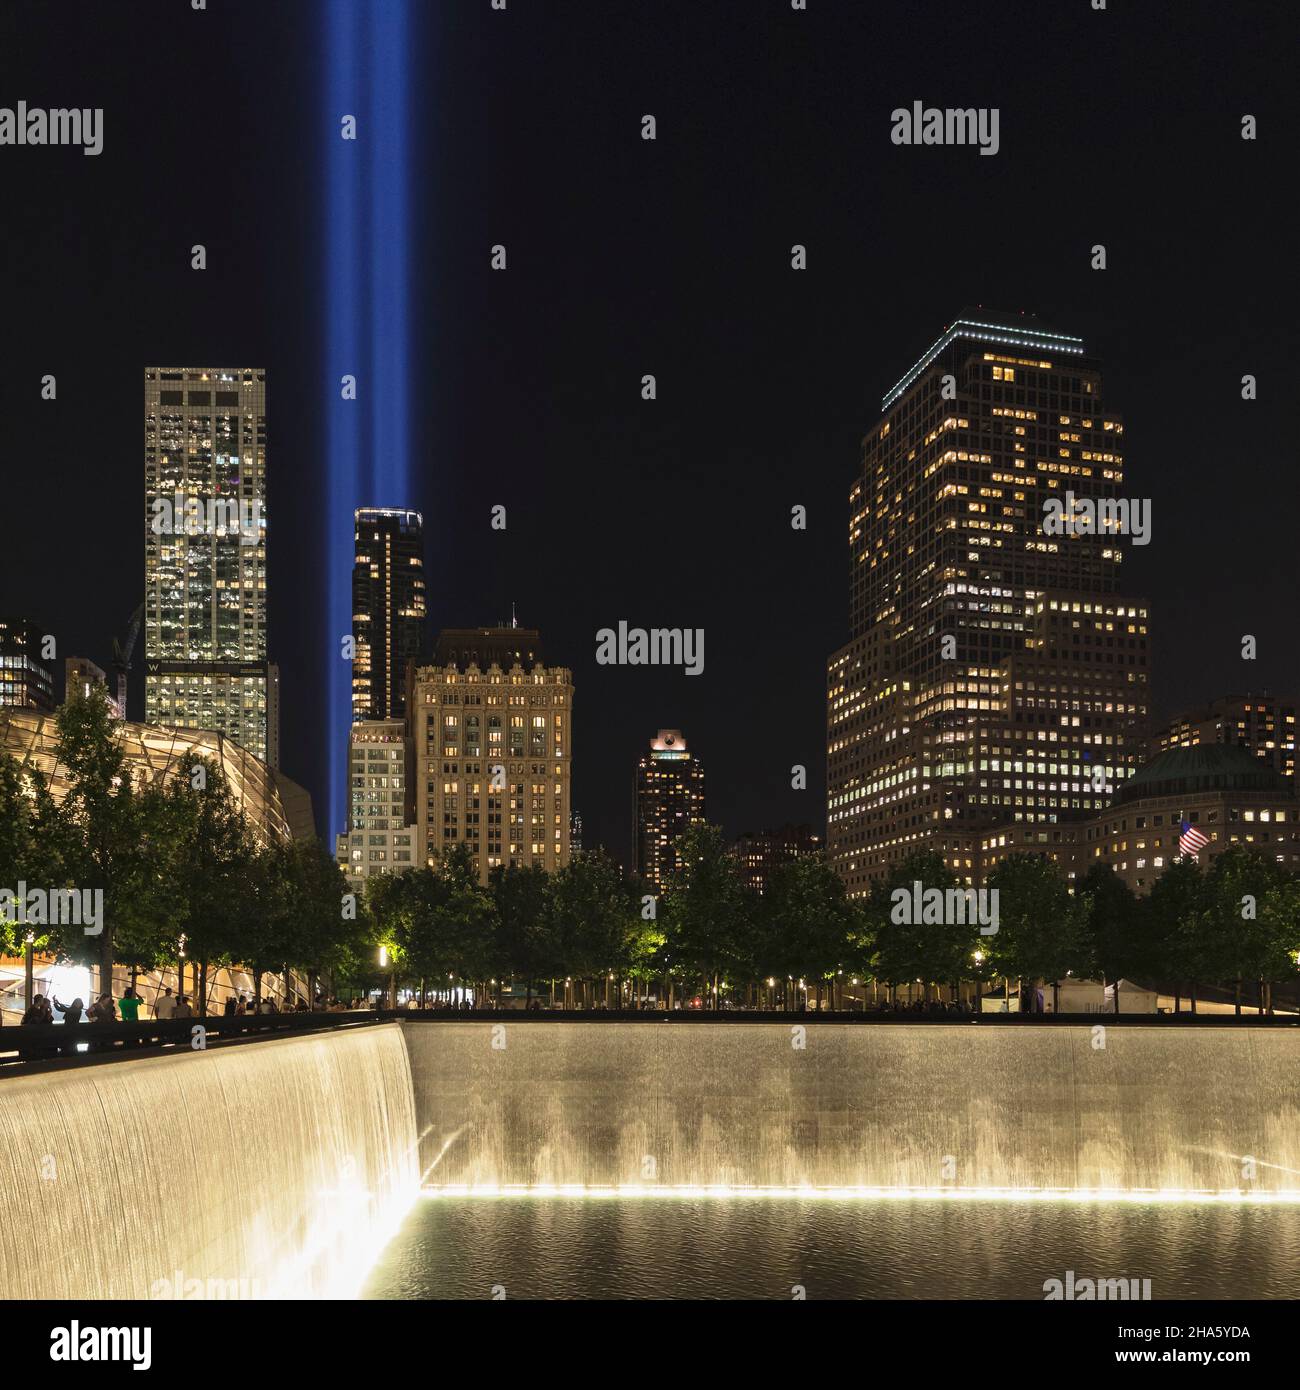 monumento nacional del 11 de septiembre y museo, las dos vigas de luz simbolizan las dos antiguas torres del centro de comercio mundial, manhattan, ciudad de nueva york, nueva york, estados unidos Foto de stock